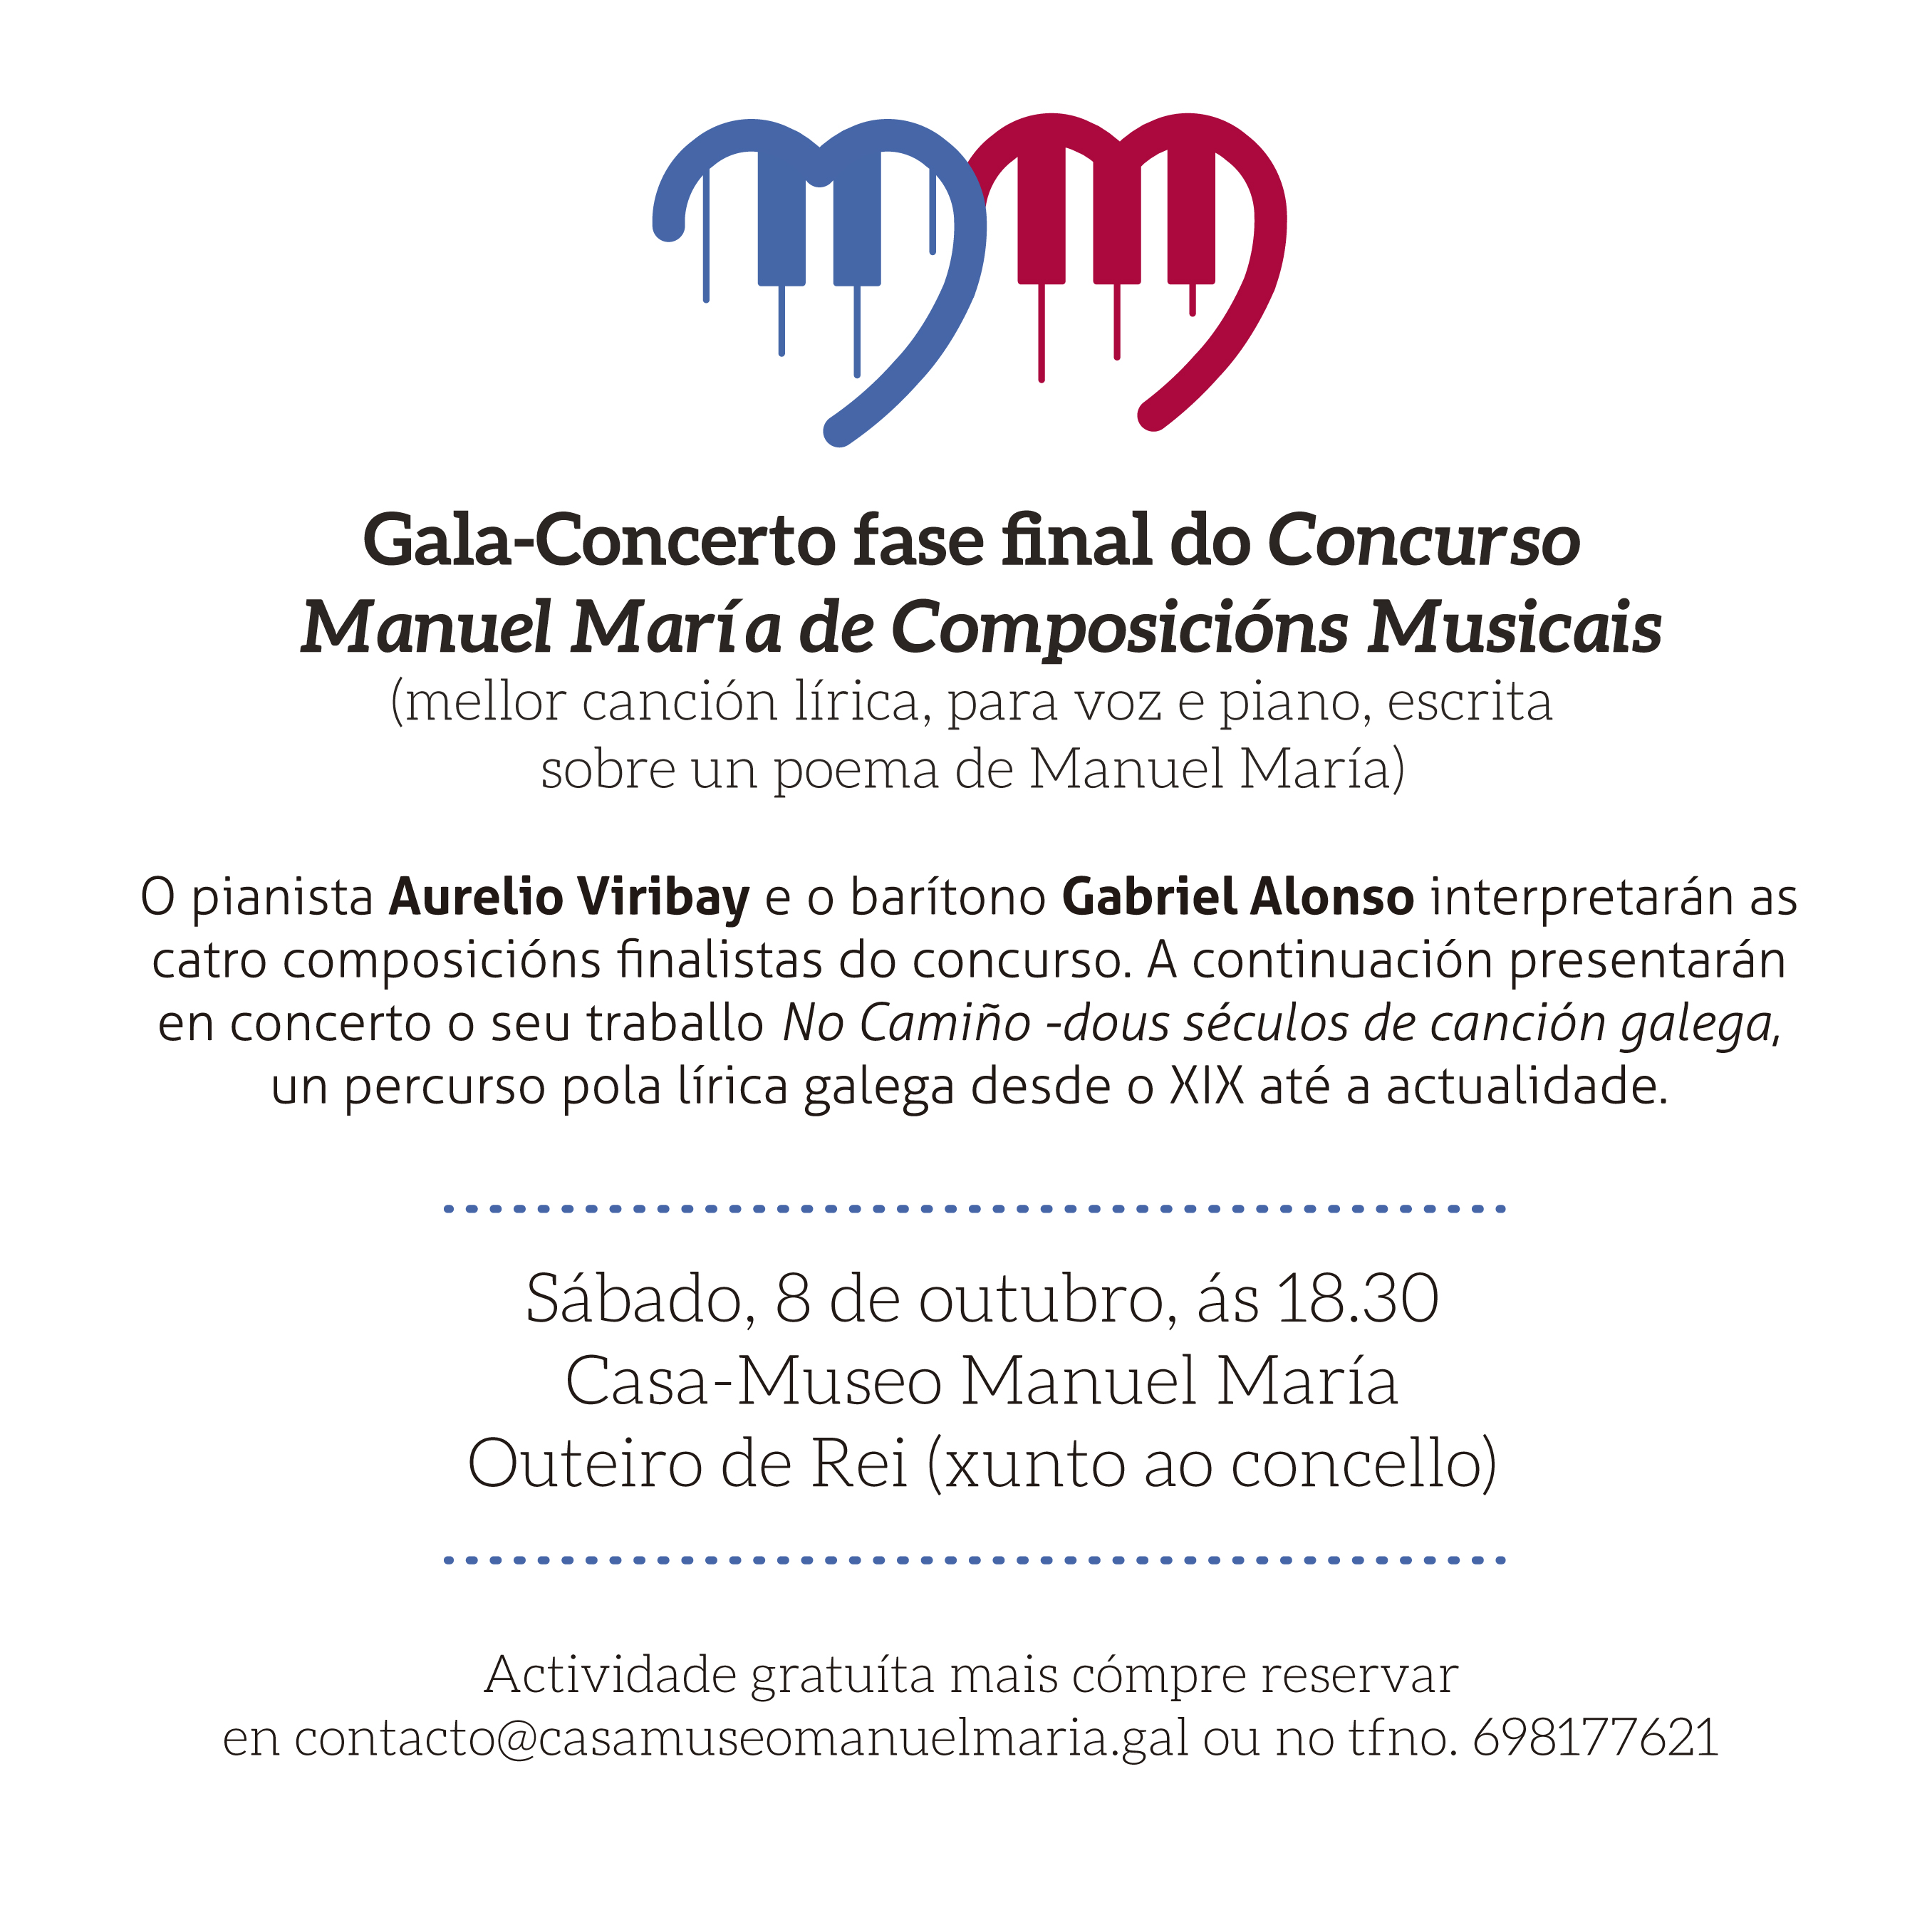 Gala-Concerto do Concurso Manuel María de Composicións Musicais